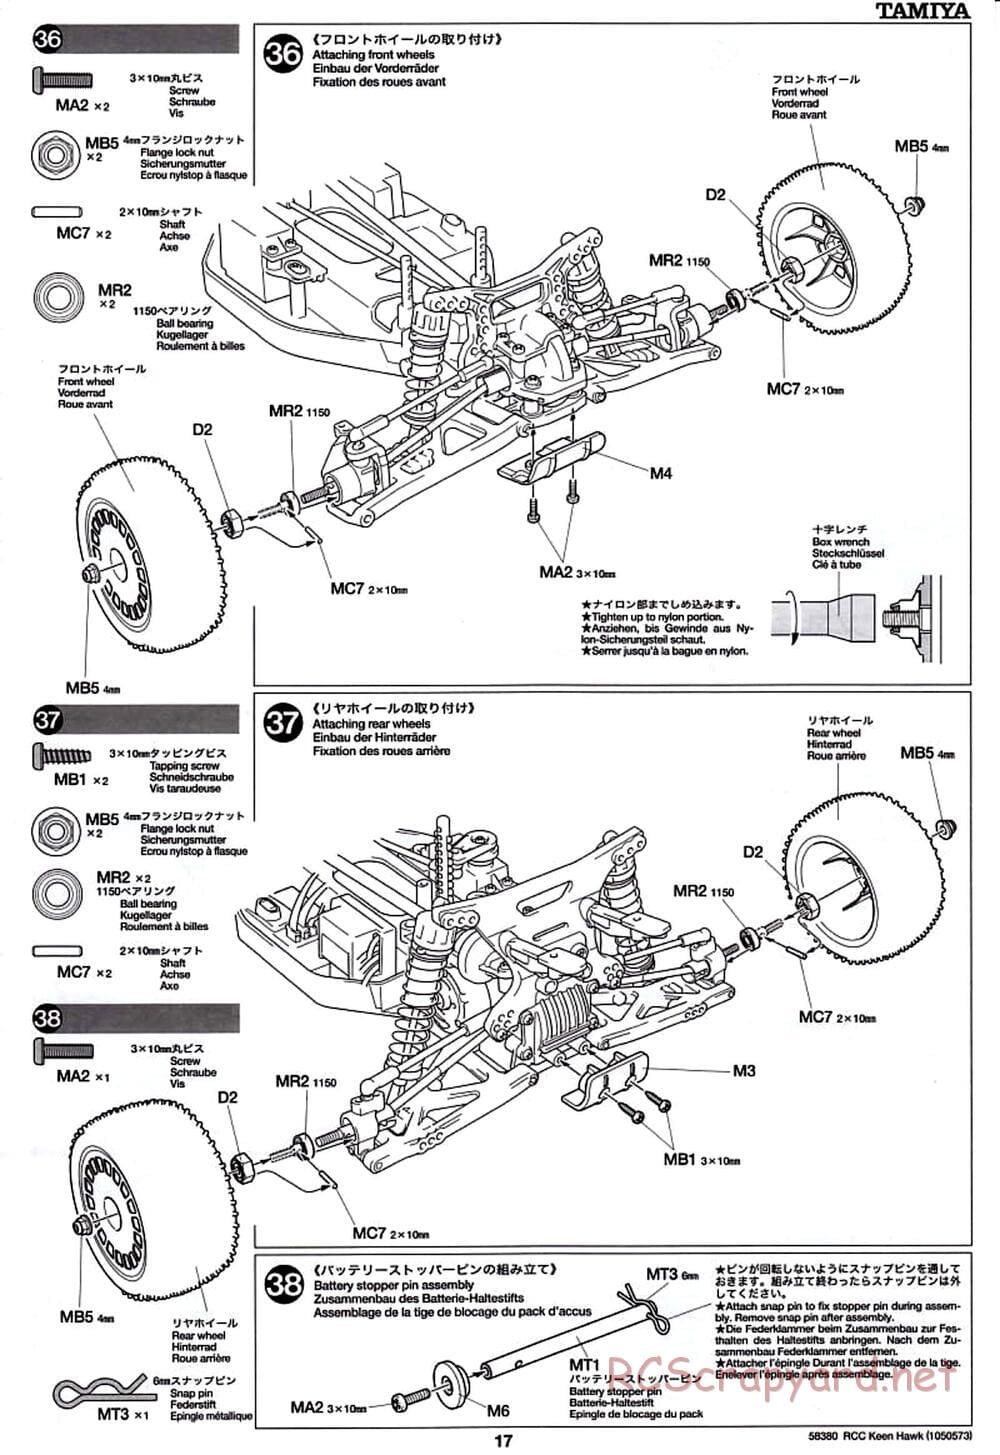 Tamiya - Keen Hawk Chassis - Manual - Page 17